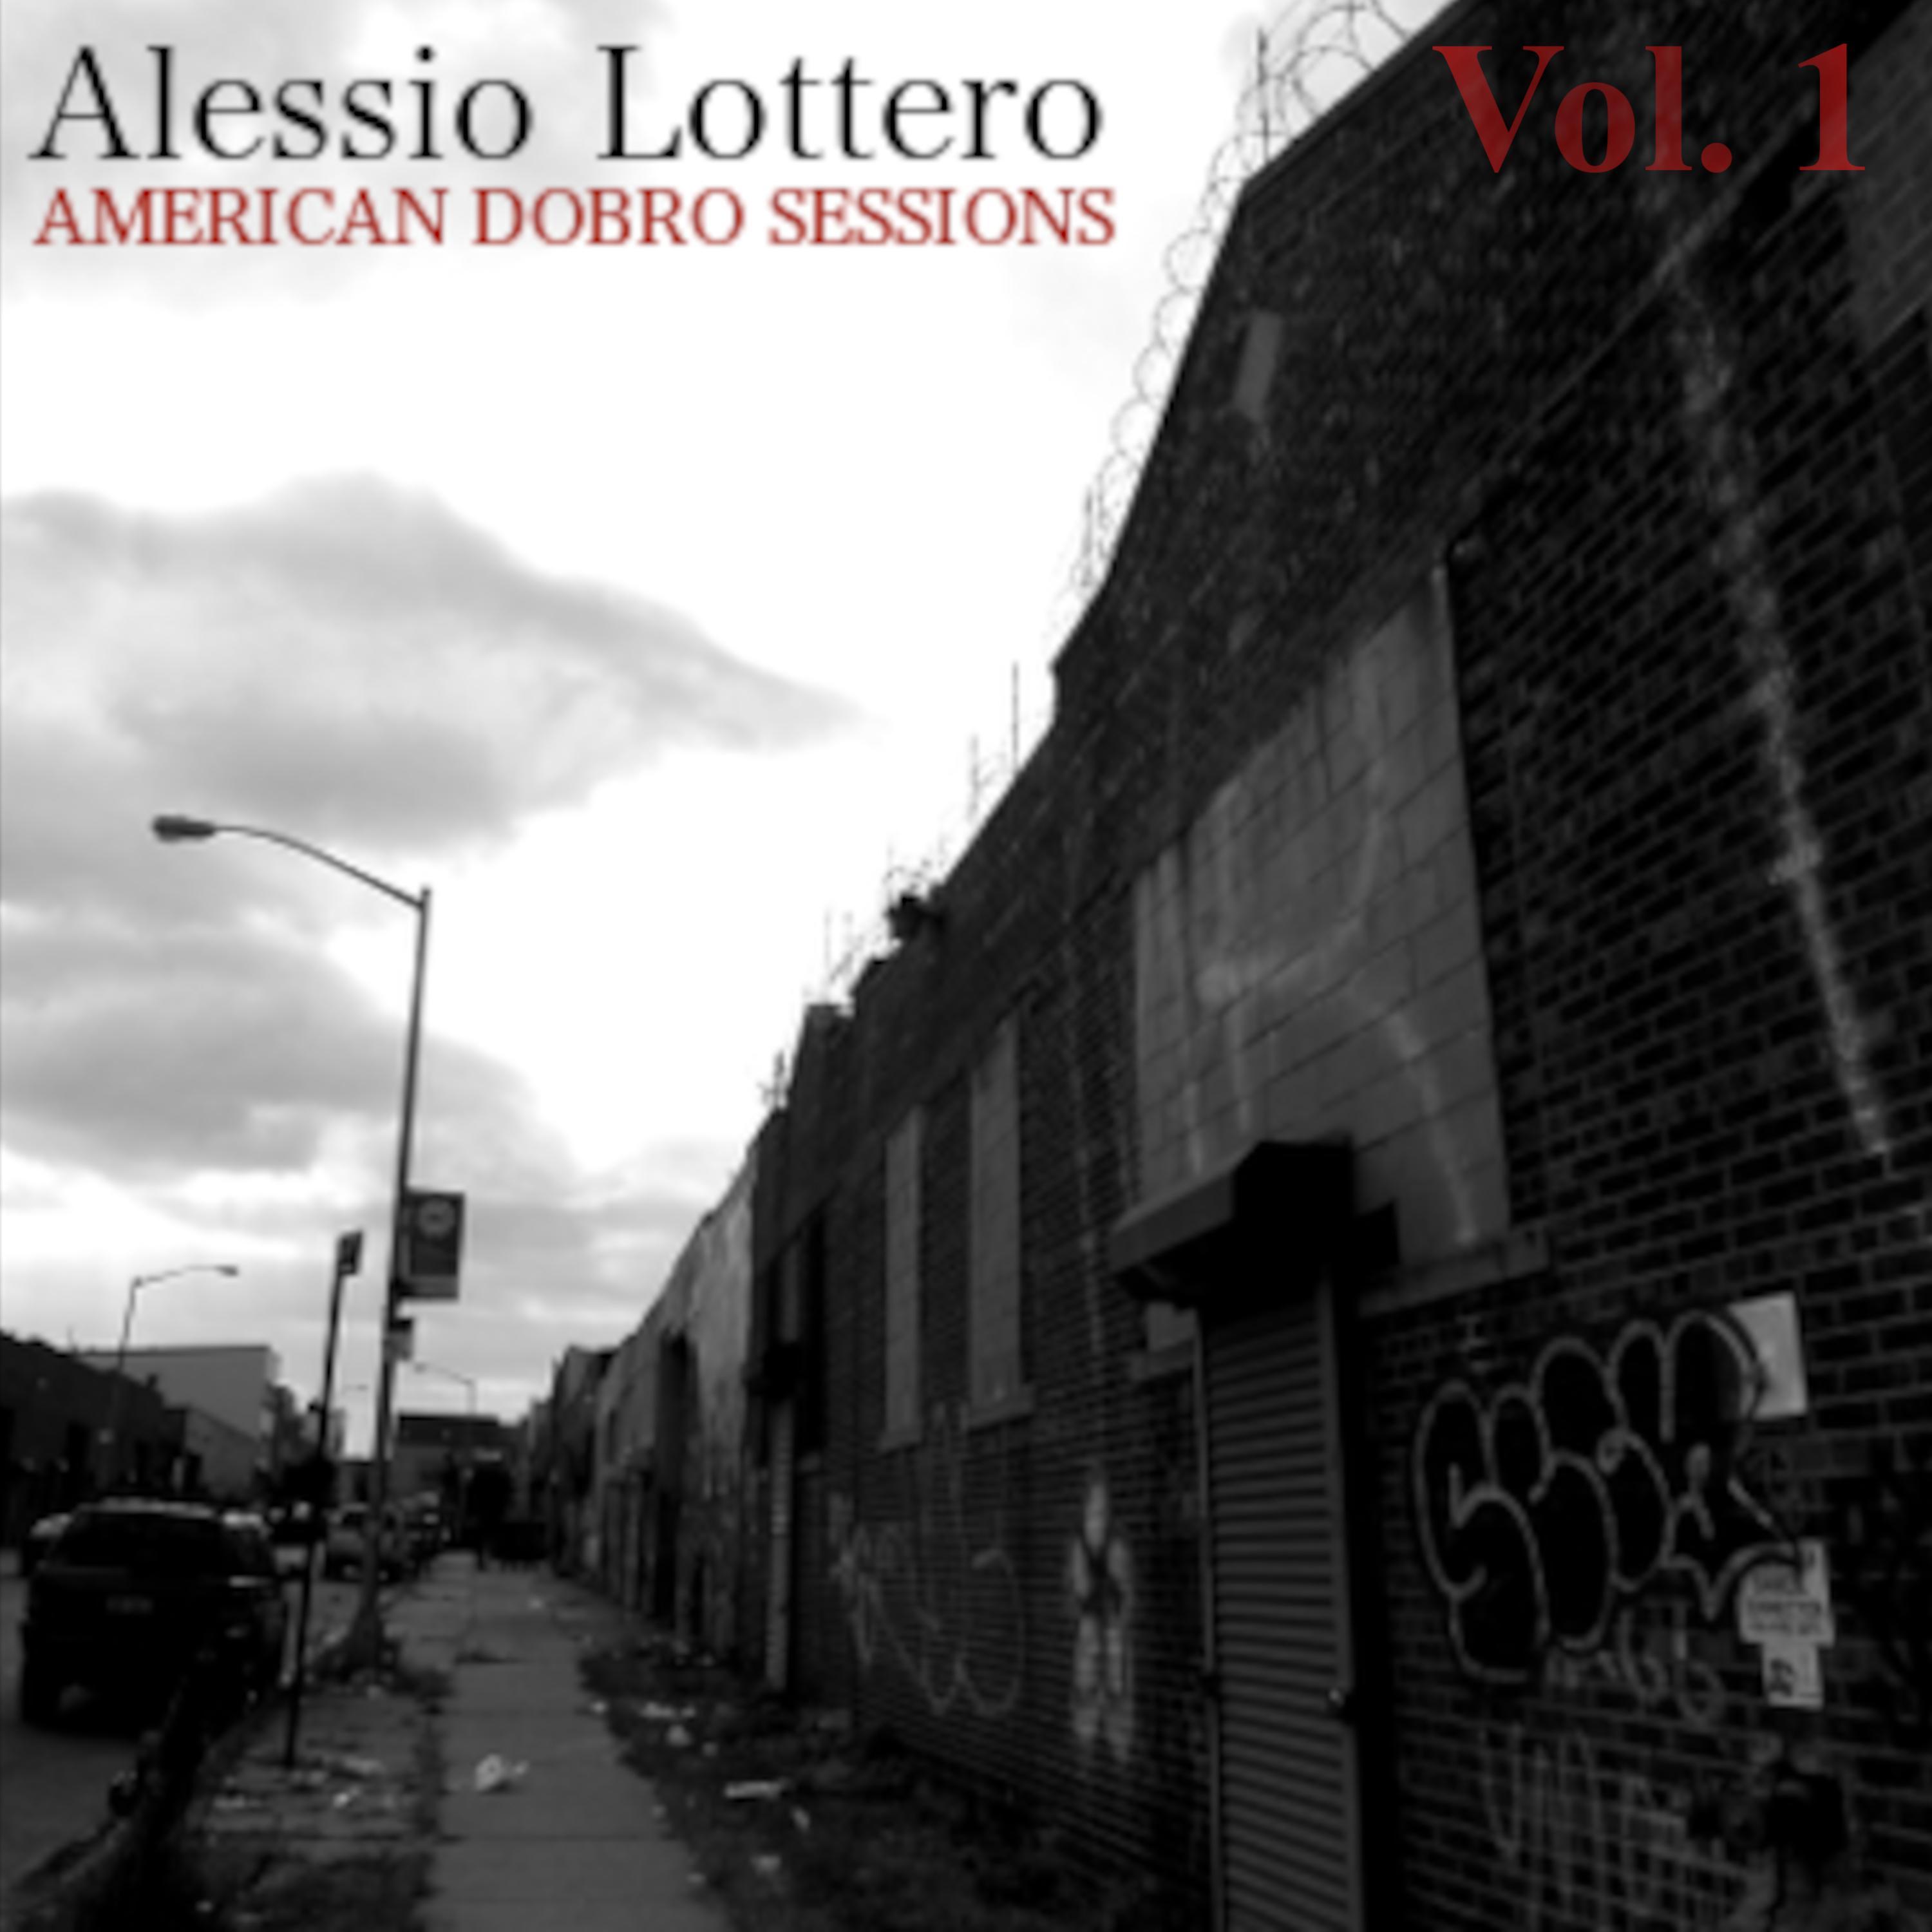 Alessio Lottero - Coffee and Winston